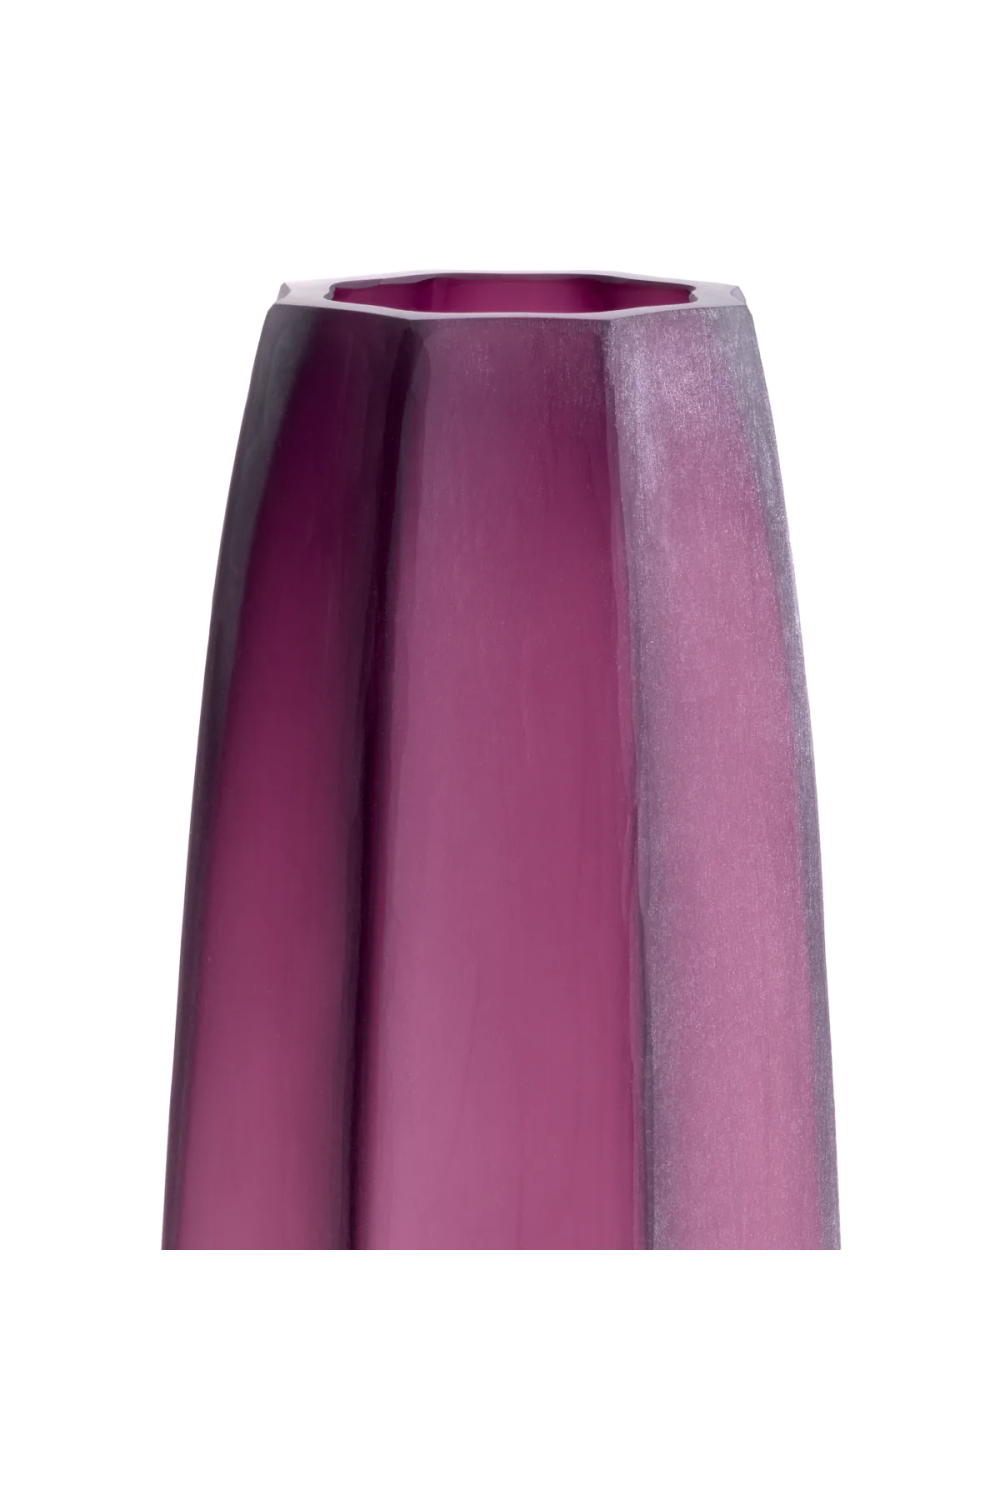 Narrow Glass Vase L | Eichholtz Tiara | Oroa.com